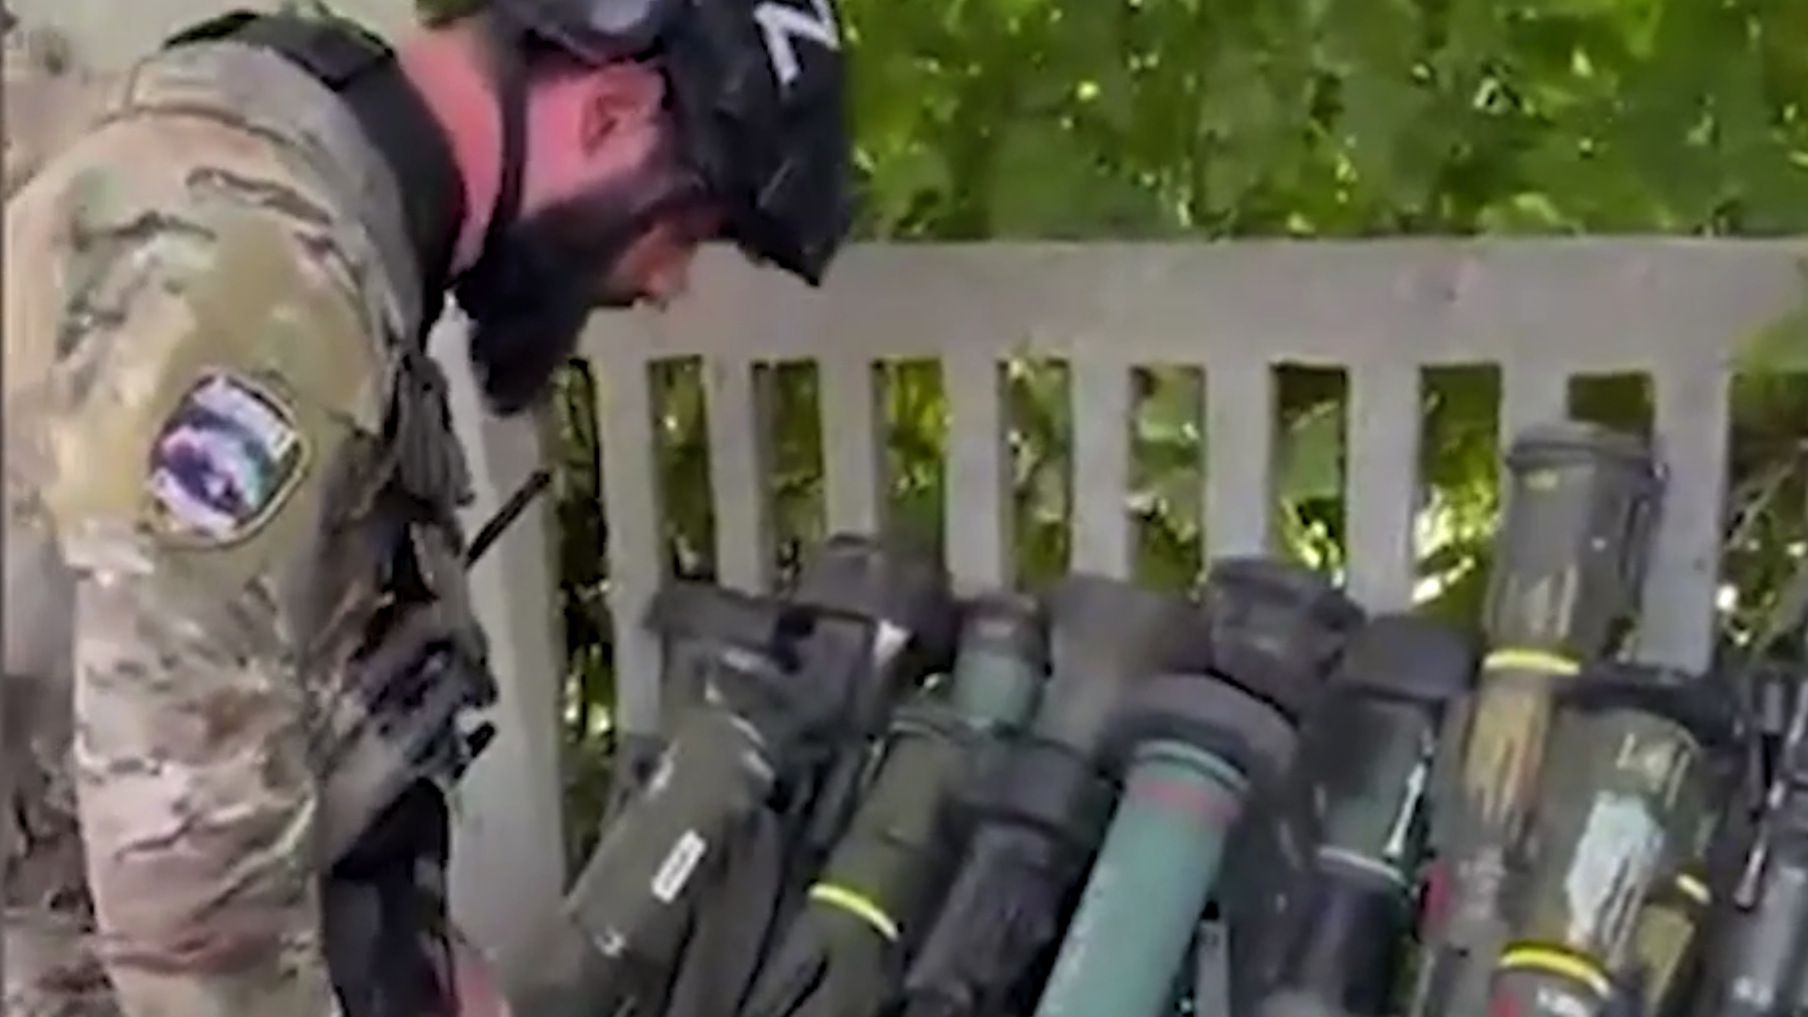 Кадыров показал видео с захваченным в районе Соледара иностранным оружием